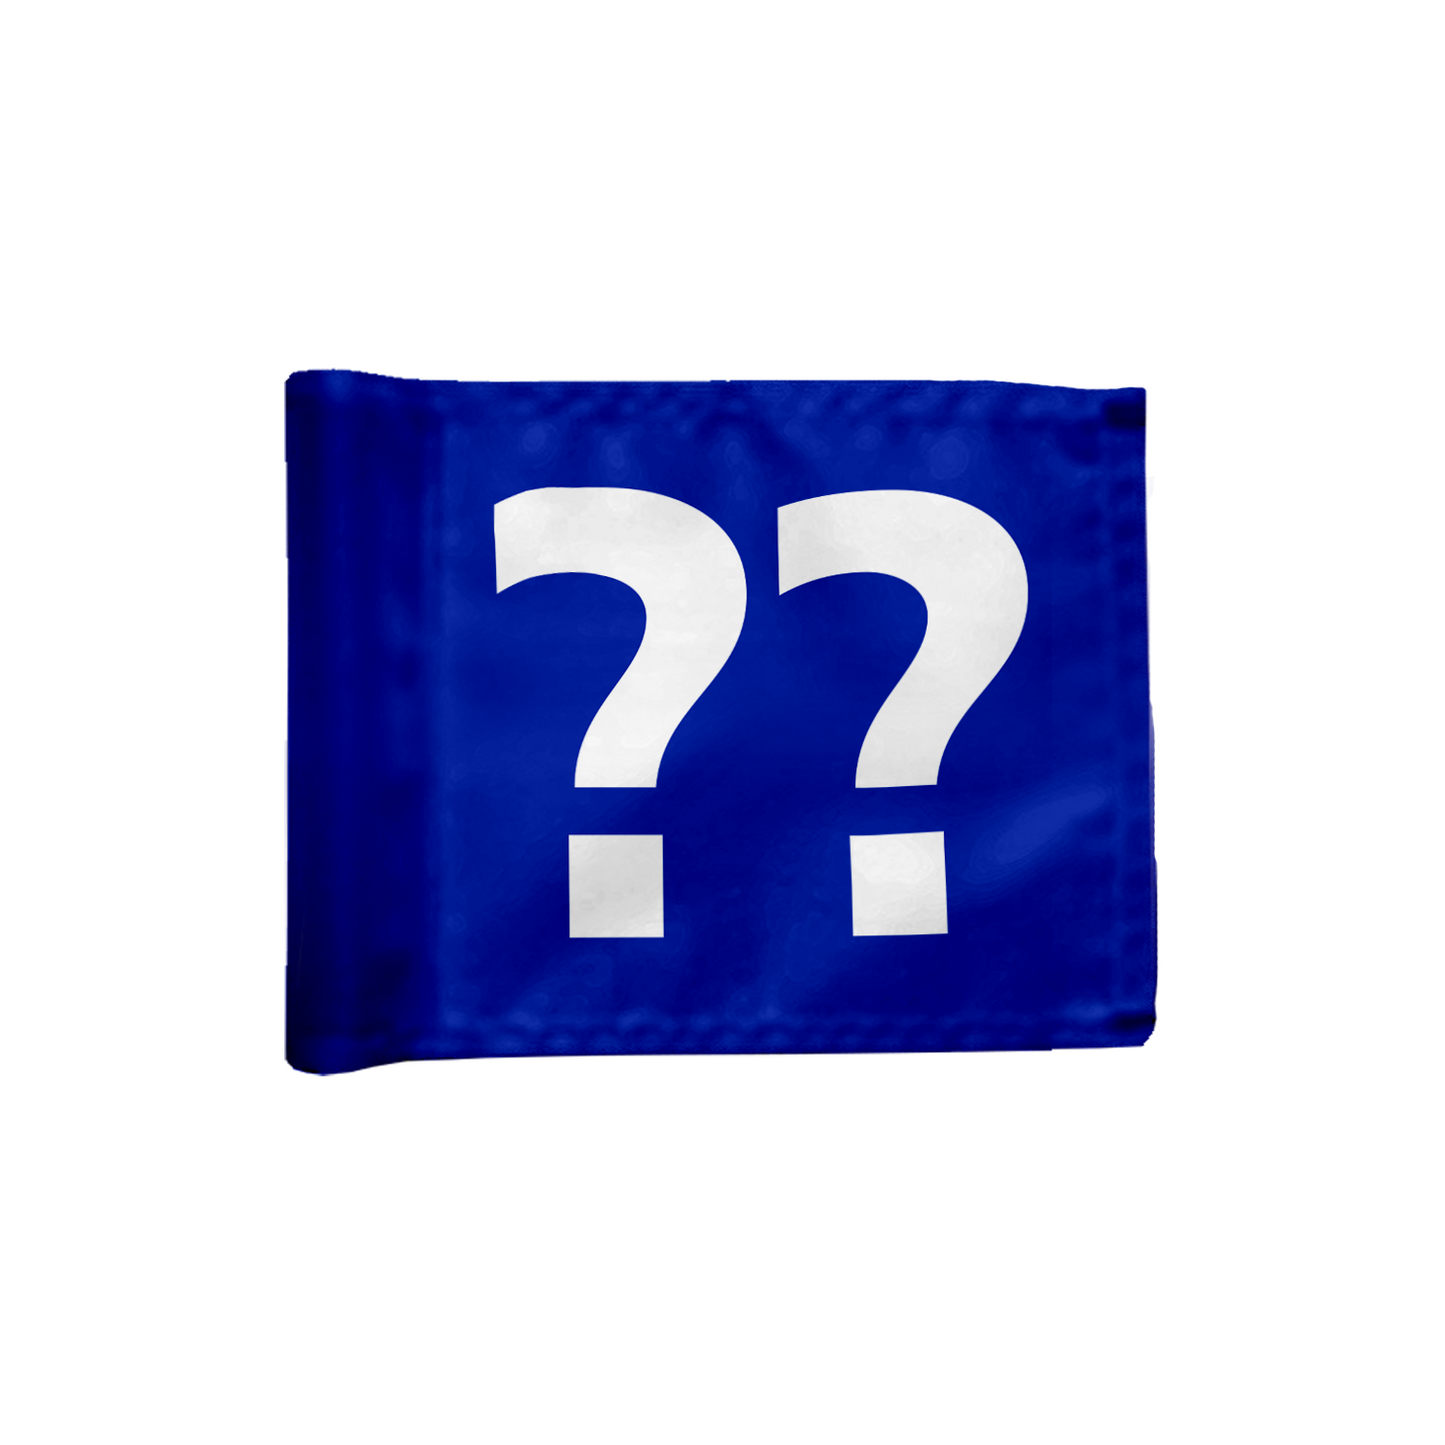 Stykvis puttinggreen flag, i blå med valgfrit hulnummer, 200 gram flagdug